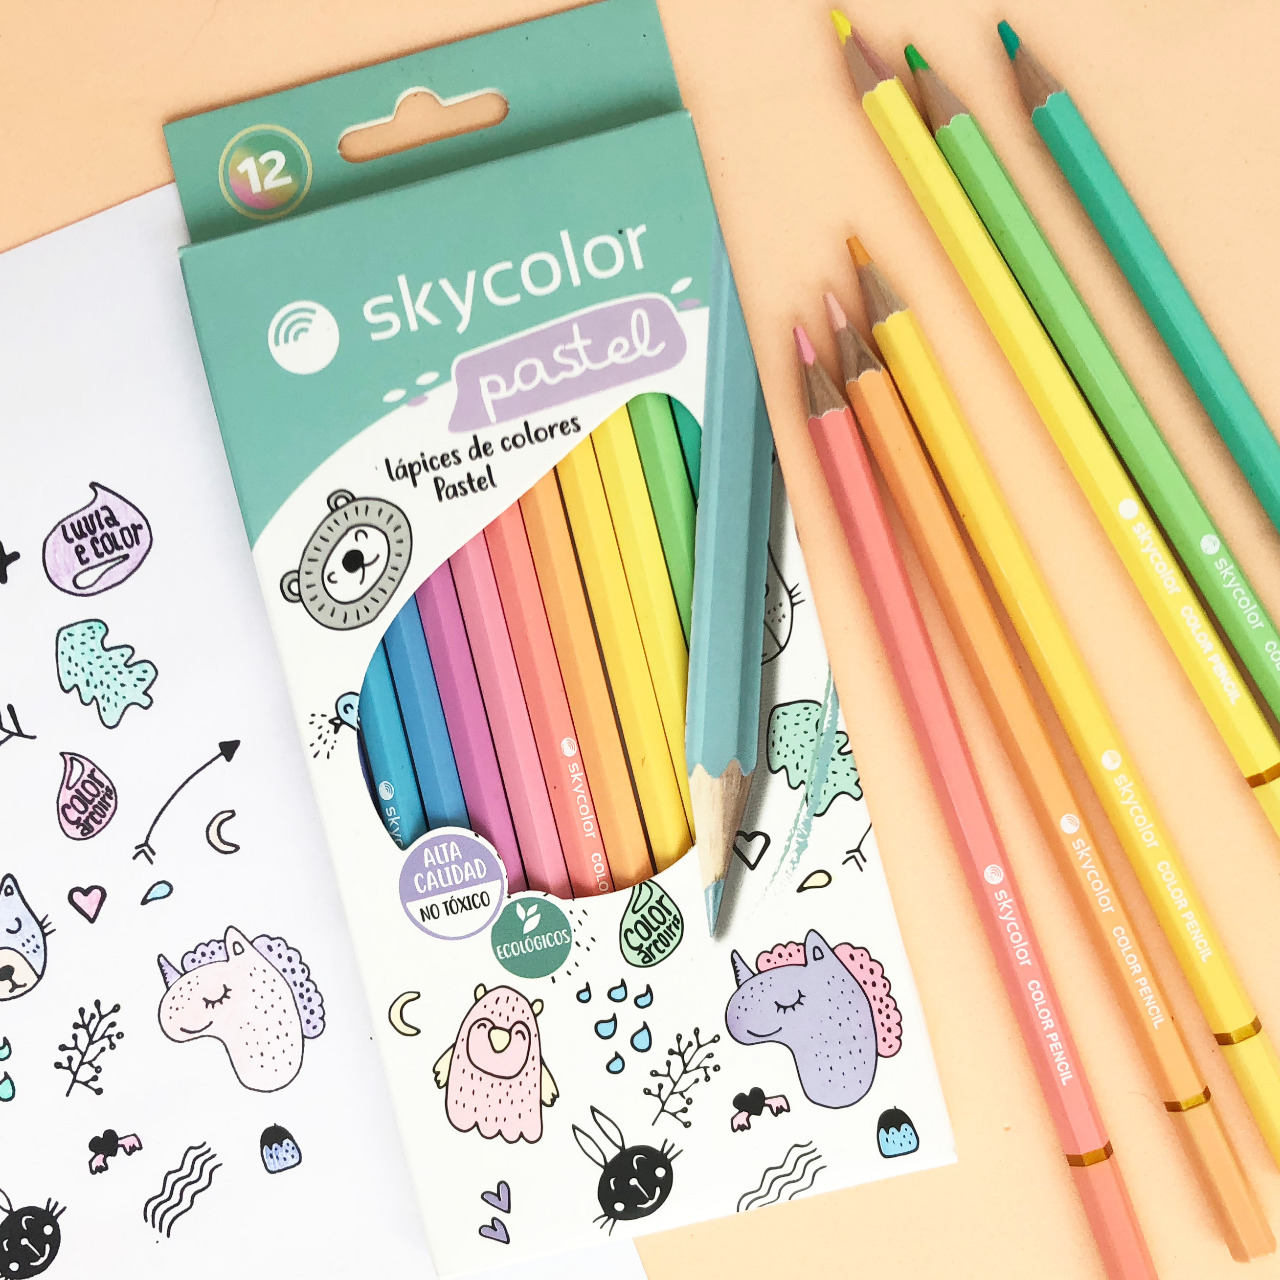 Skycolor lápices pasteles